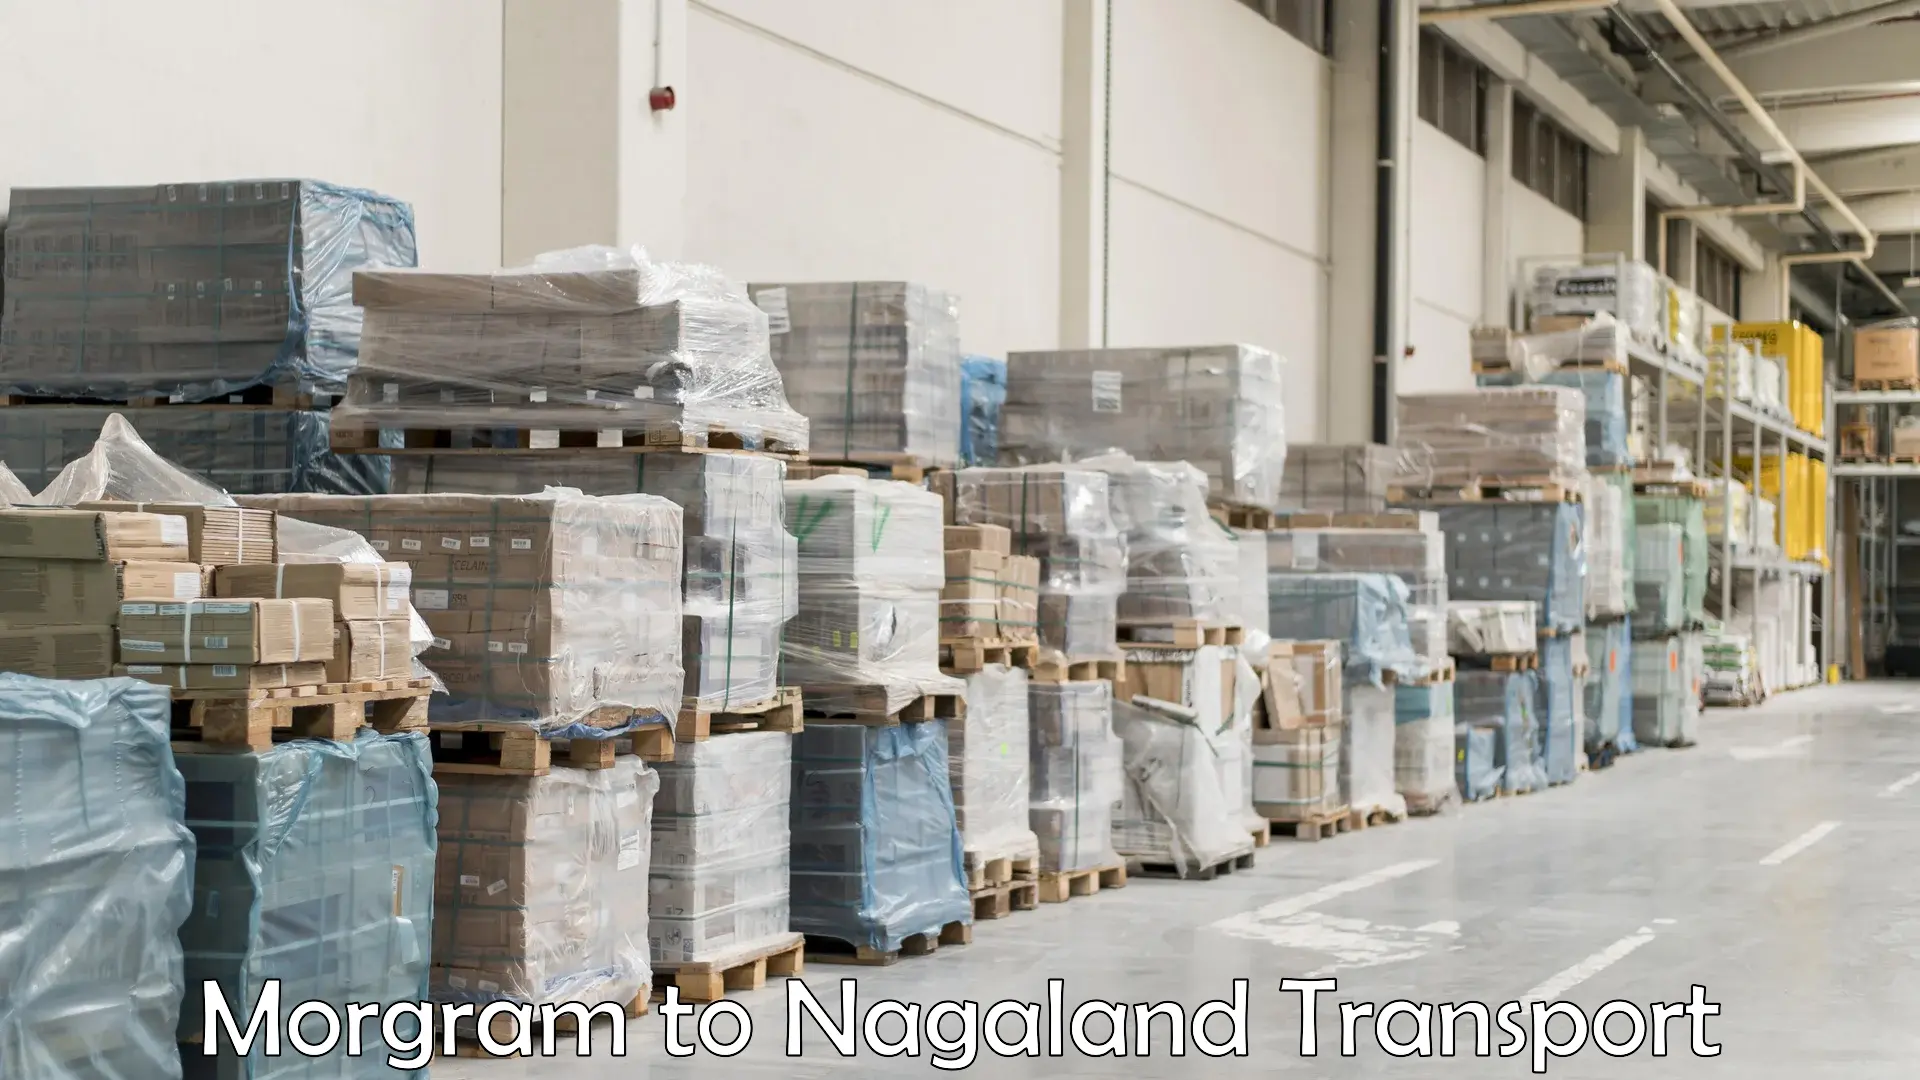 Land transport services Morgram to Nagaland